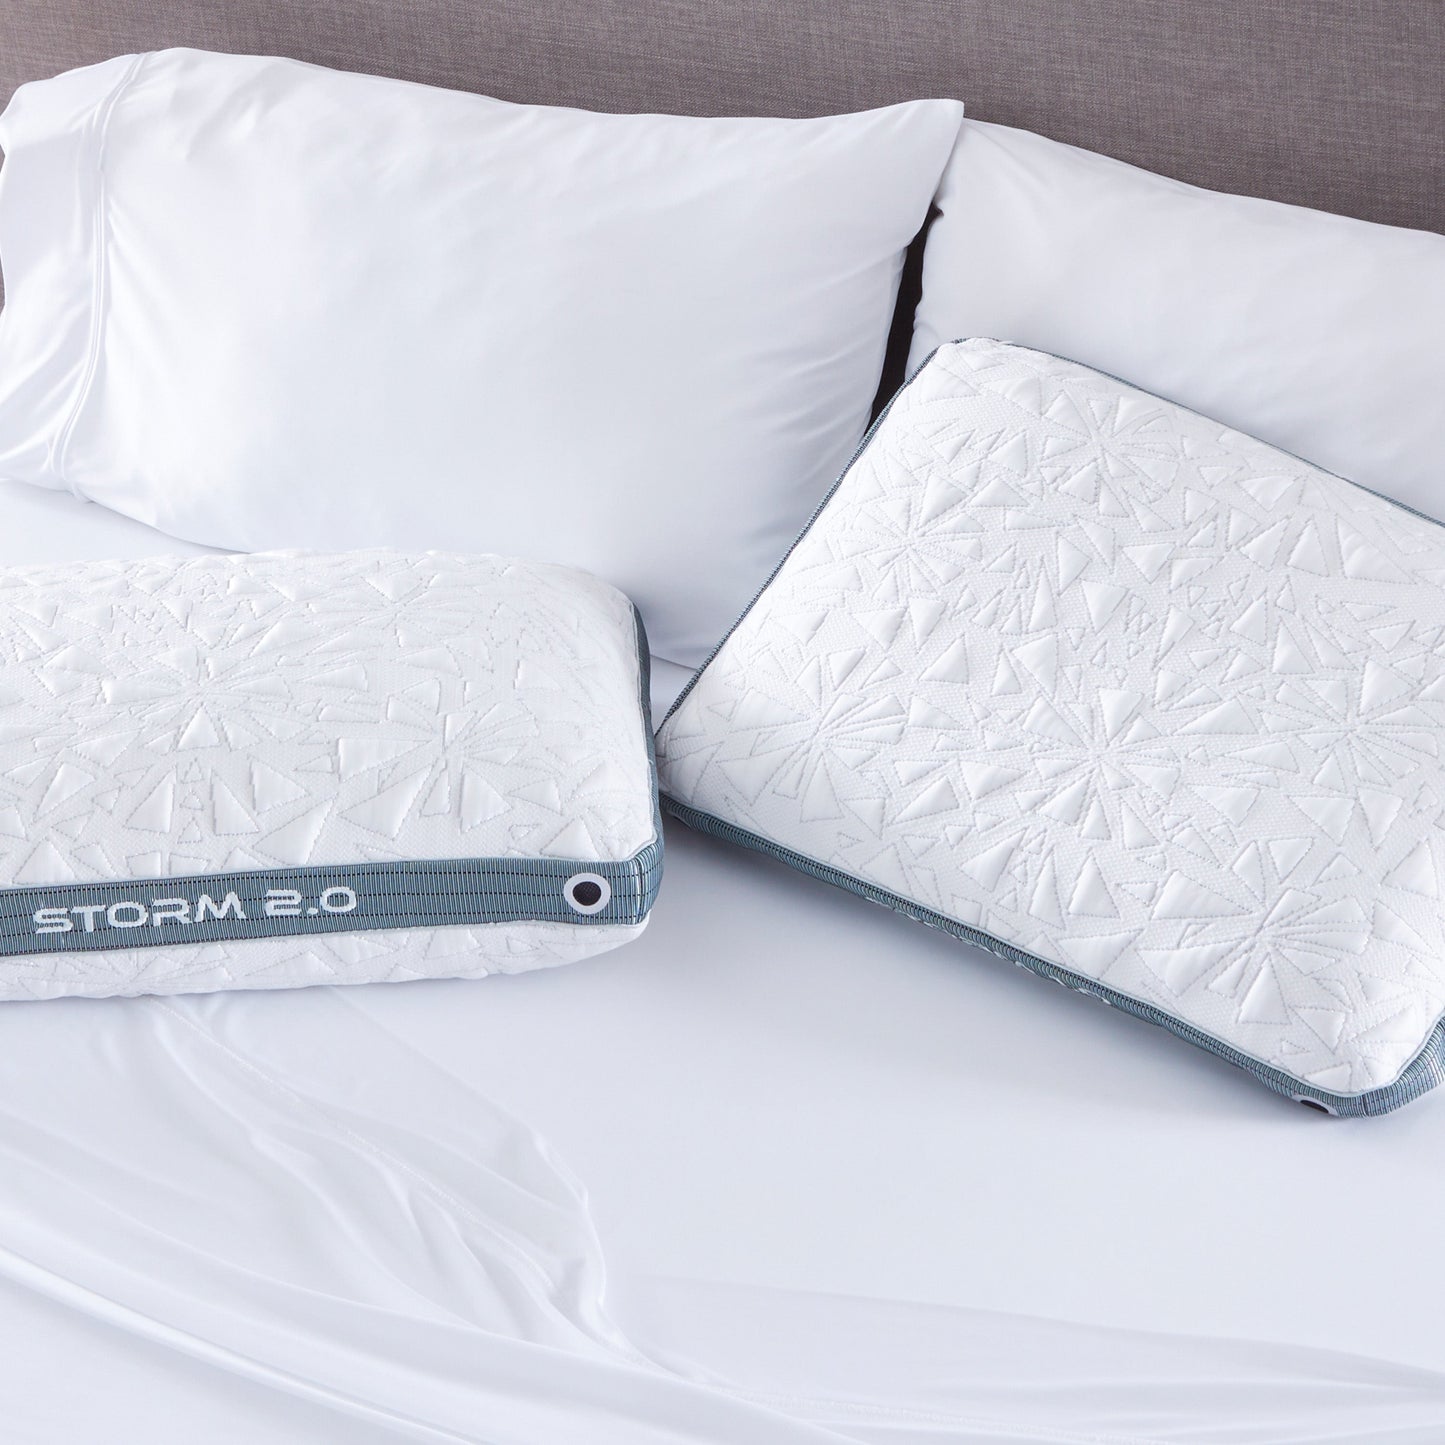 Bedgear Storm II Performance Pillows